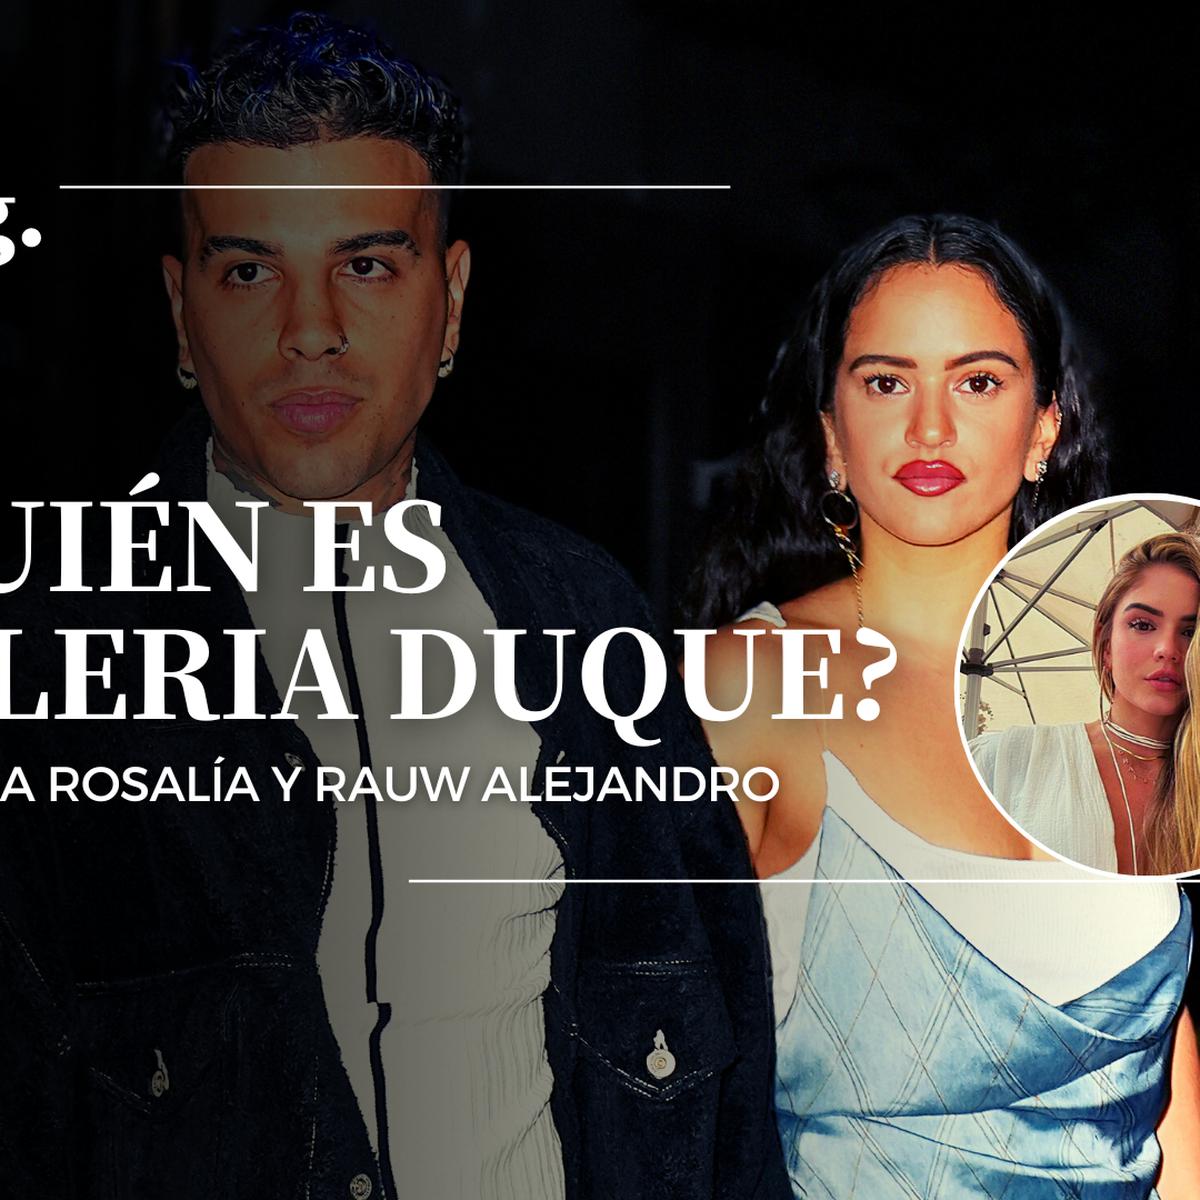 Rauw Alejandro y Rosalía anuncian su EP común - Casting